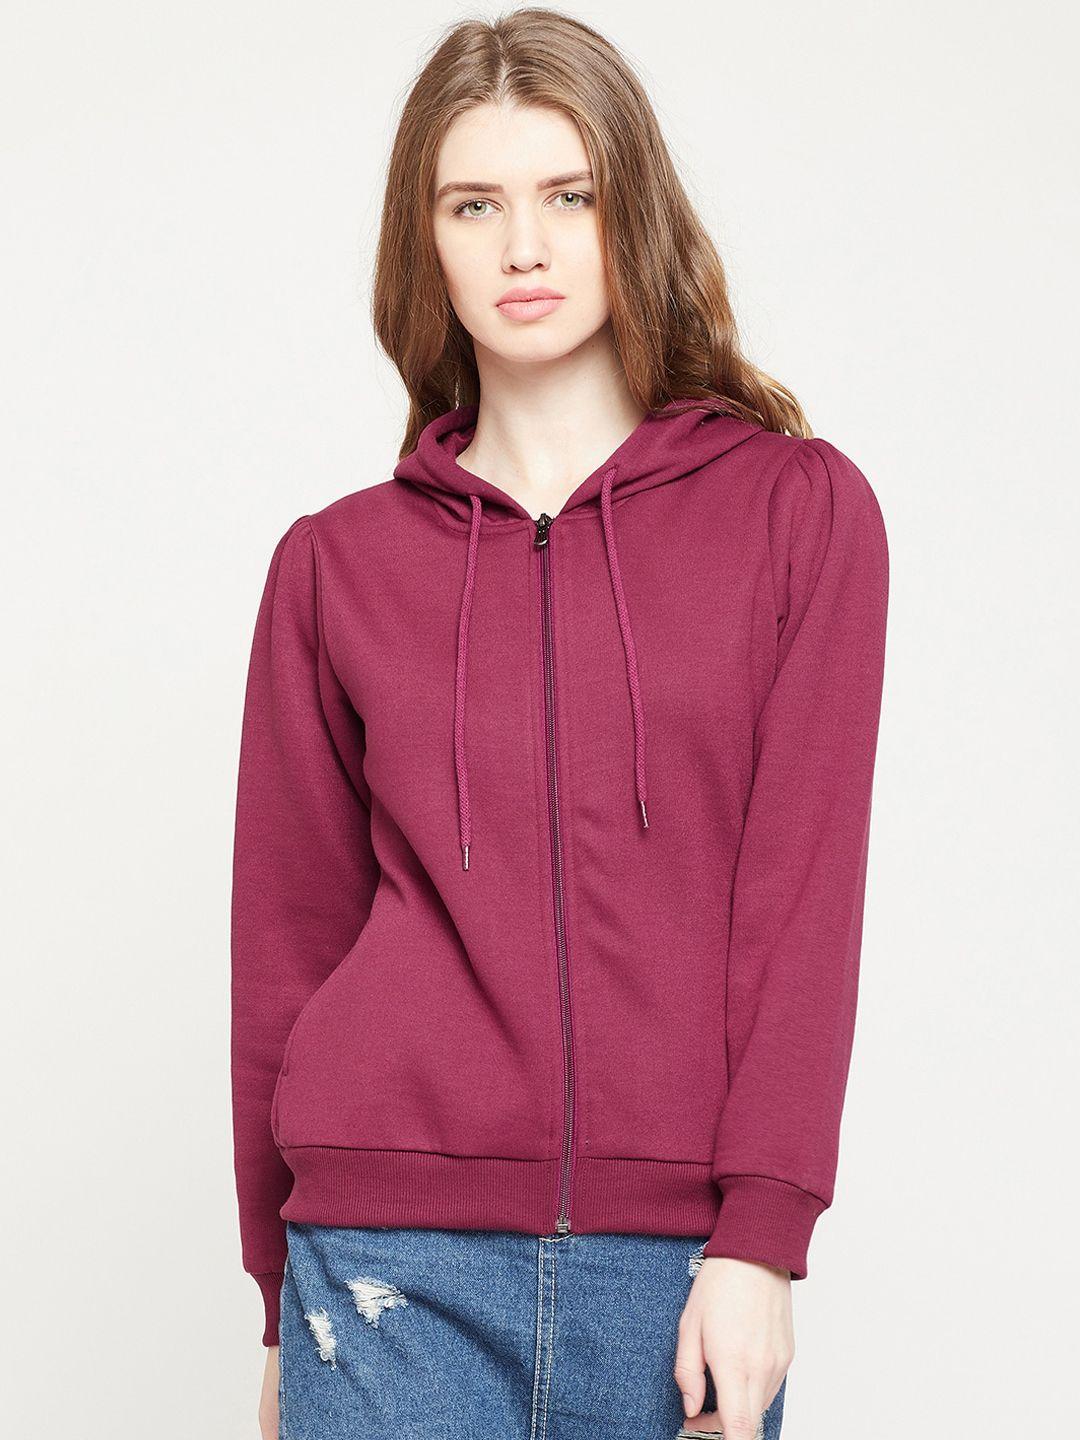 carlton-london-women-maroon-solid-sweatshirt